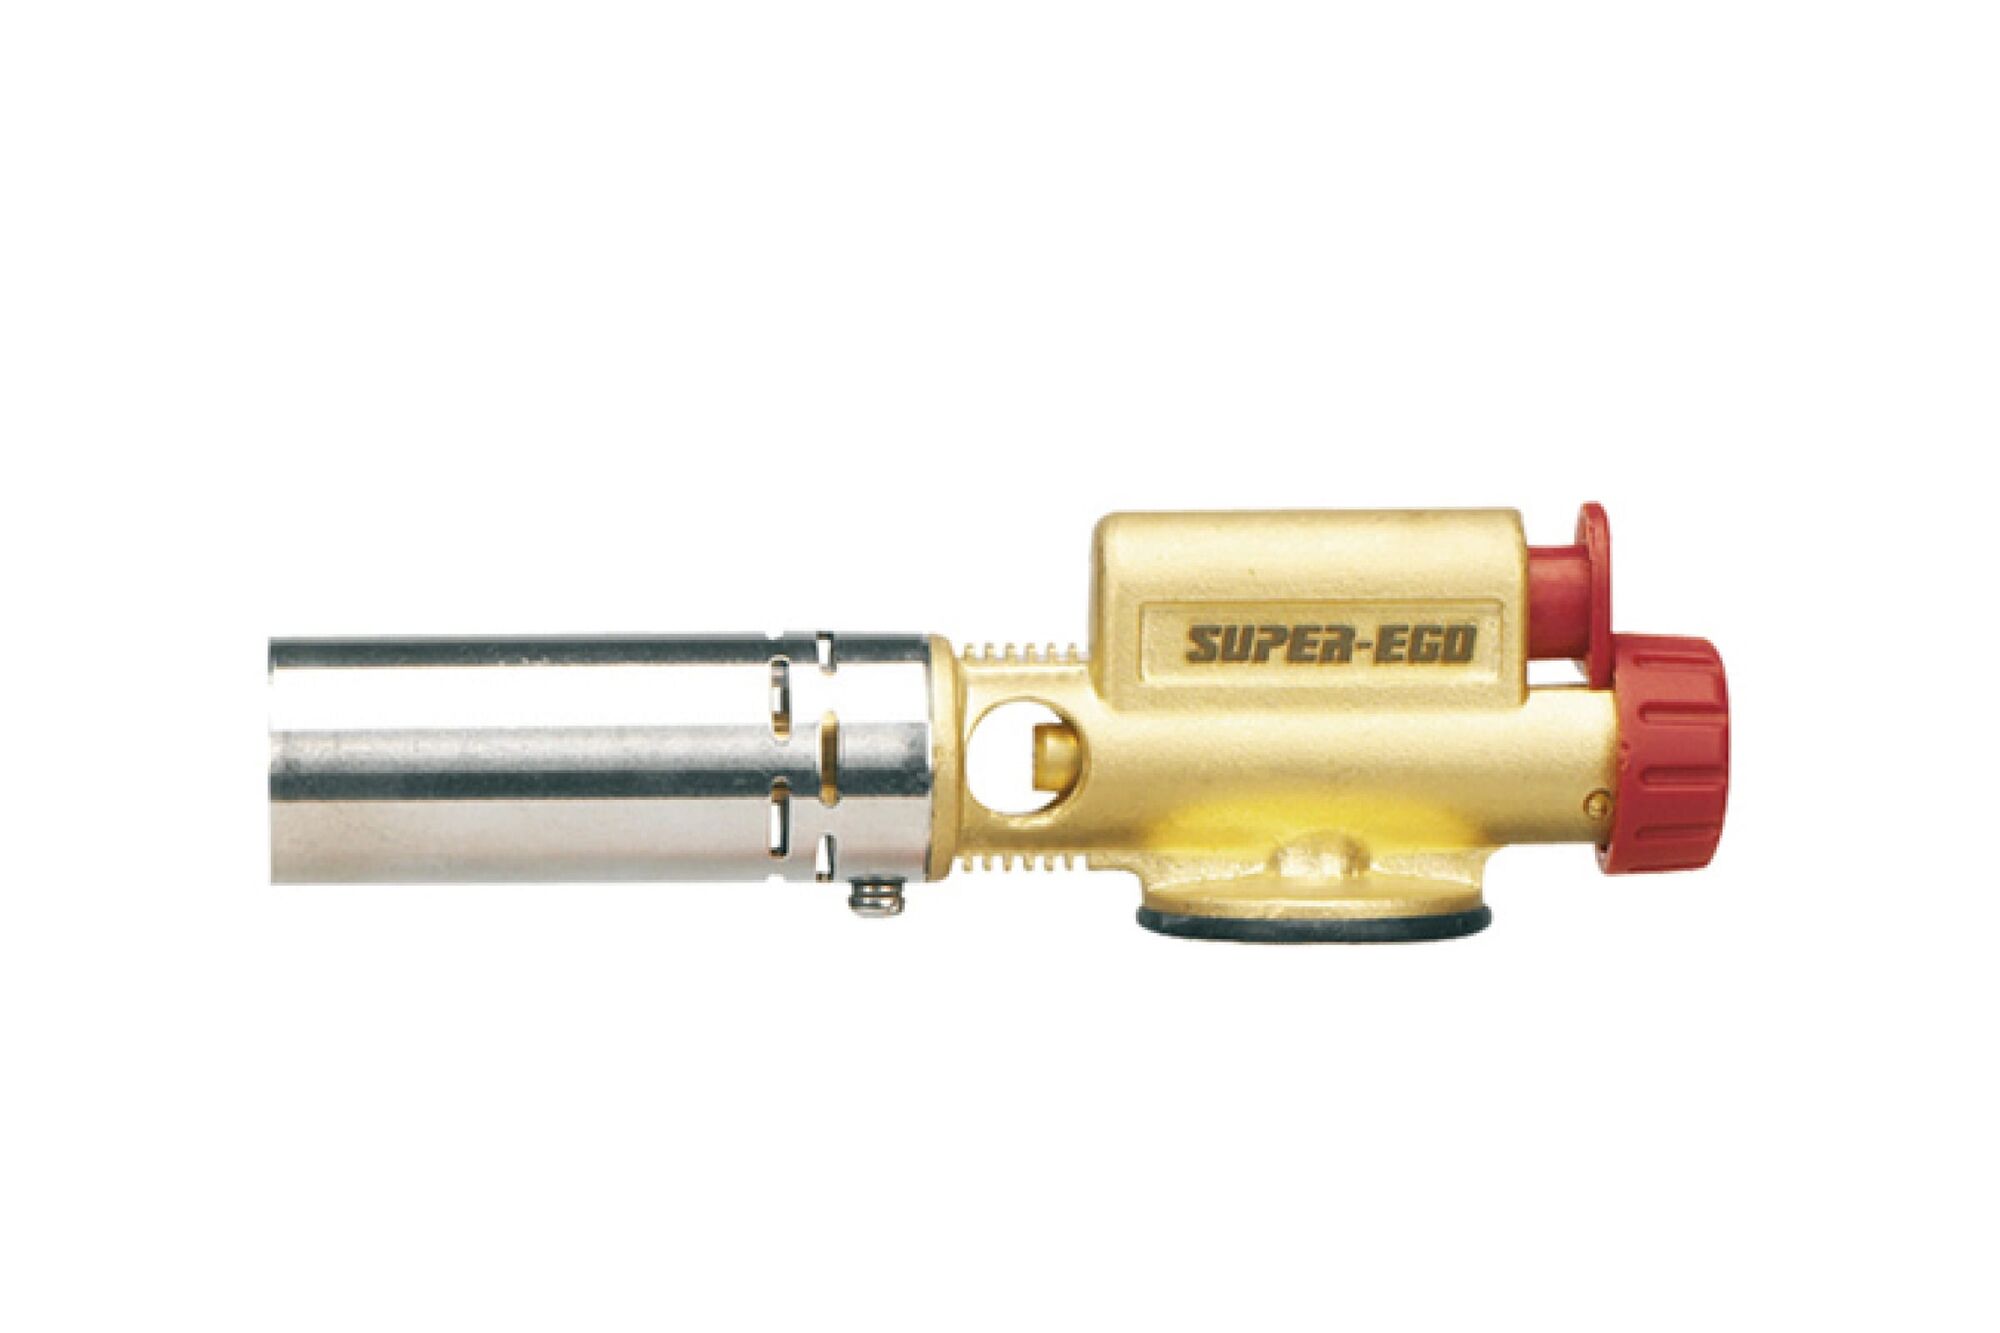 Газовая пьезогорелка, сопло 22 мм, соединение EU 7/16, без баллона SUPER-EGO R3555300